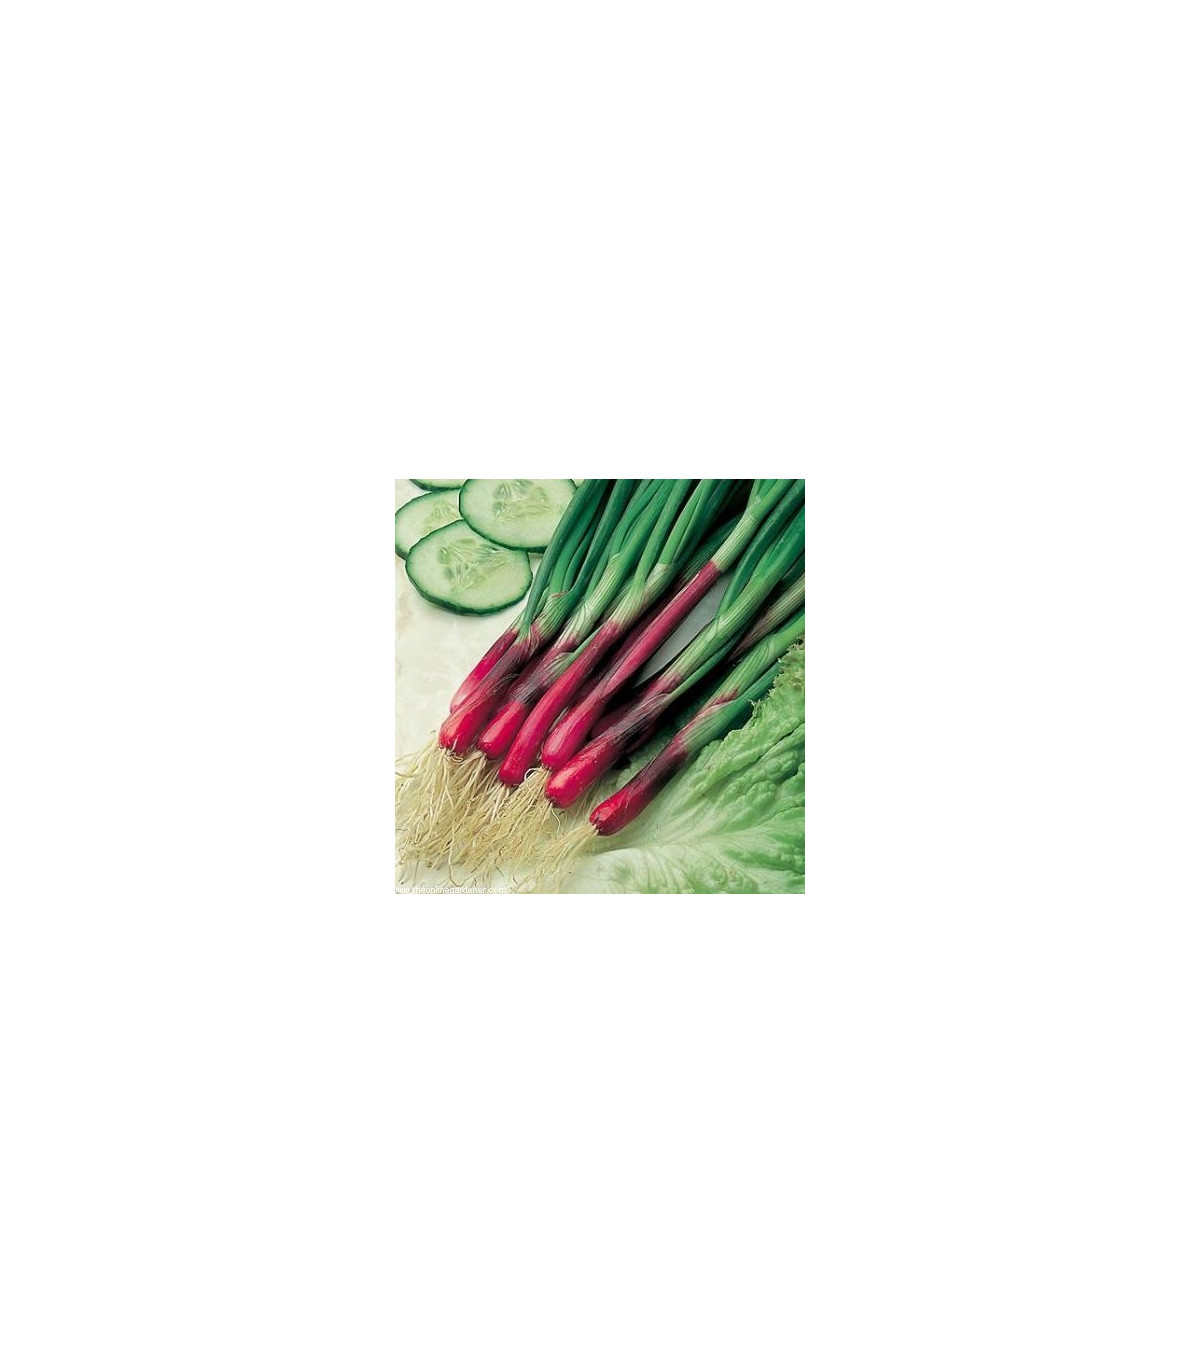 Cibule jarní červená Redmate - Allium cepa - osivo cibule - 100 ks